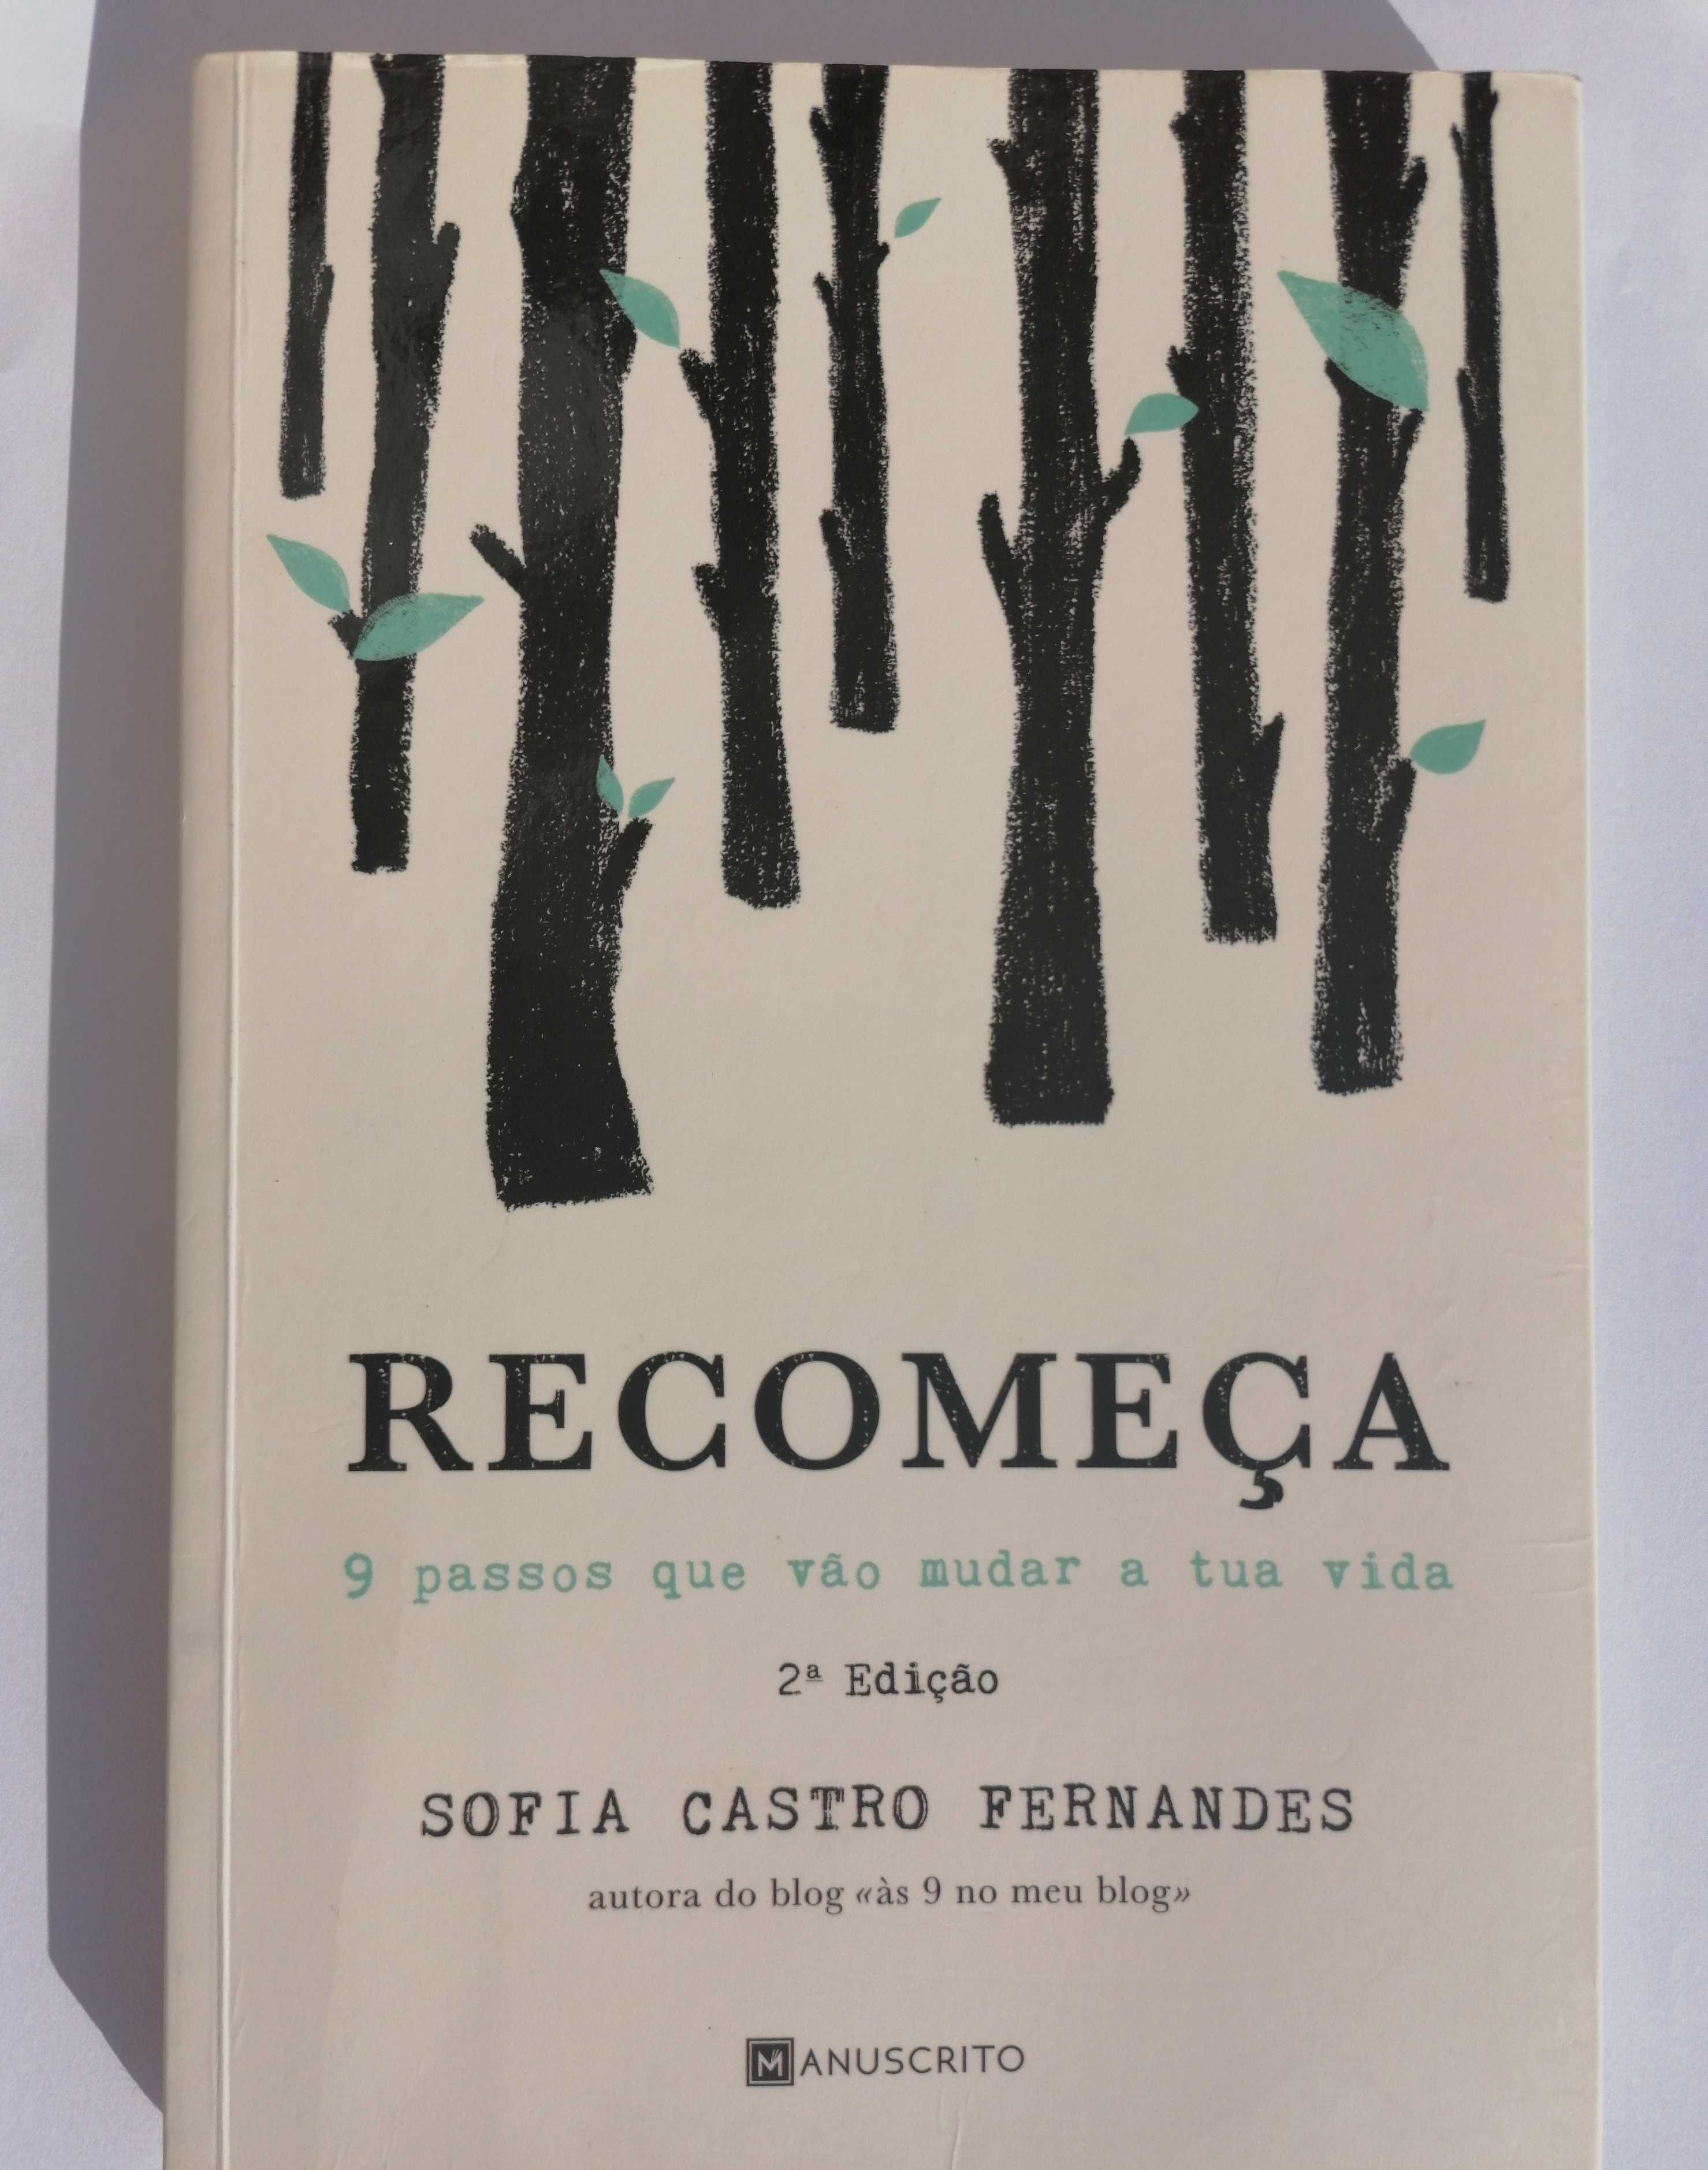 Livro "Recomeçar" - Sofia Castro Fernandes